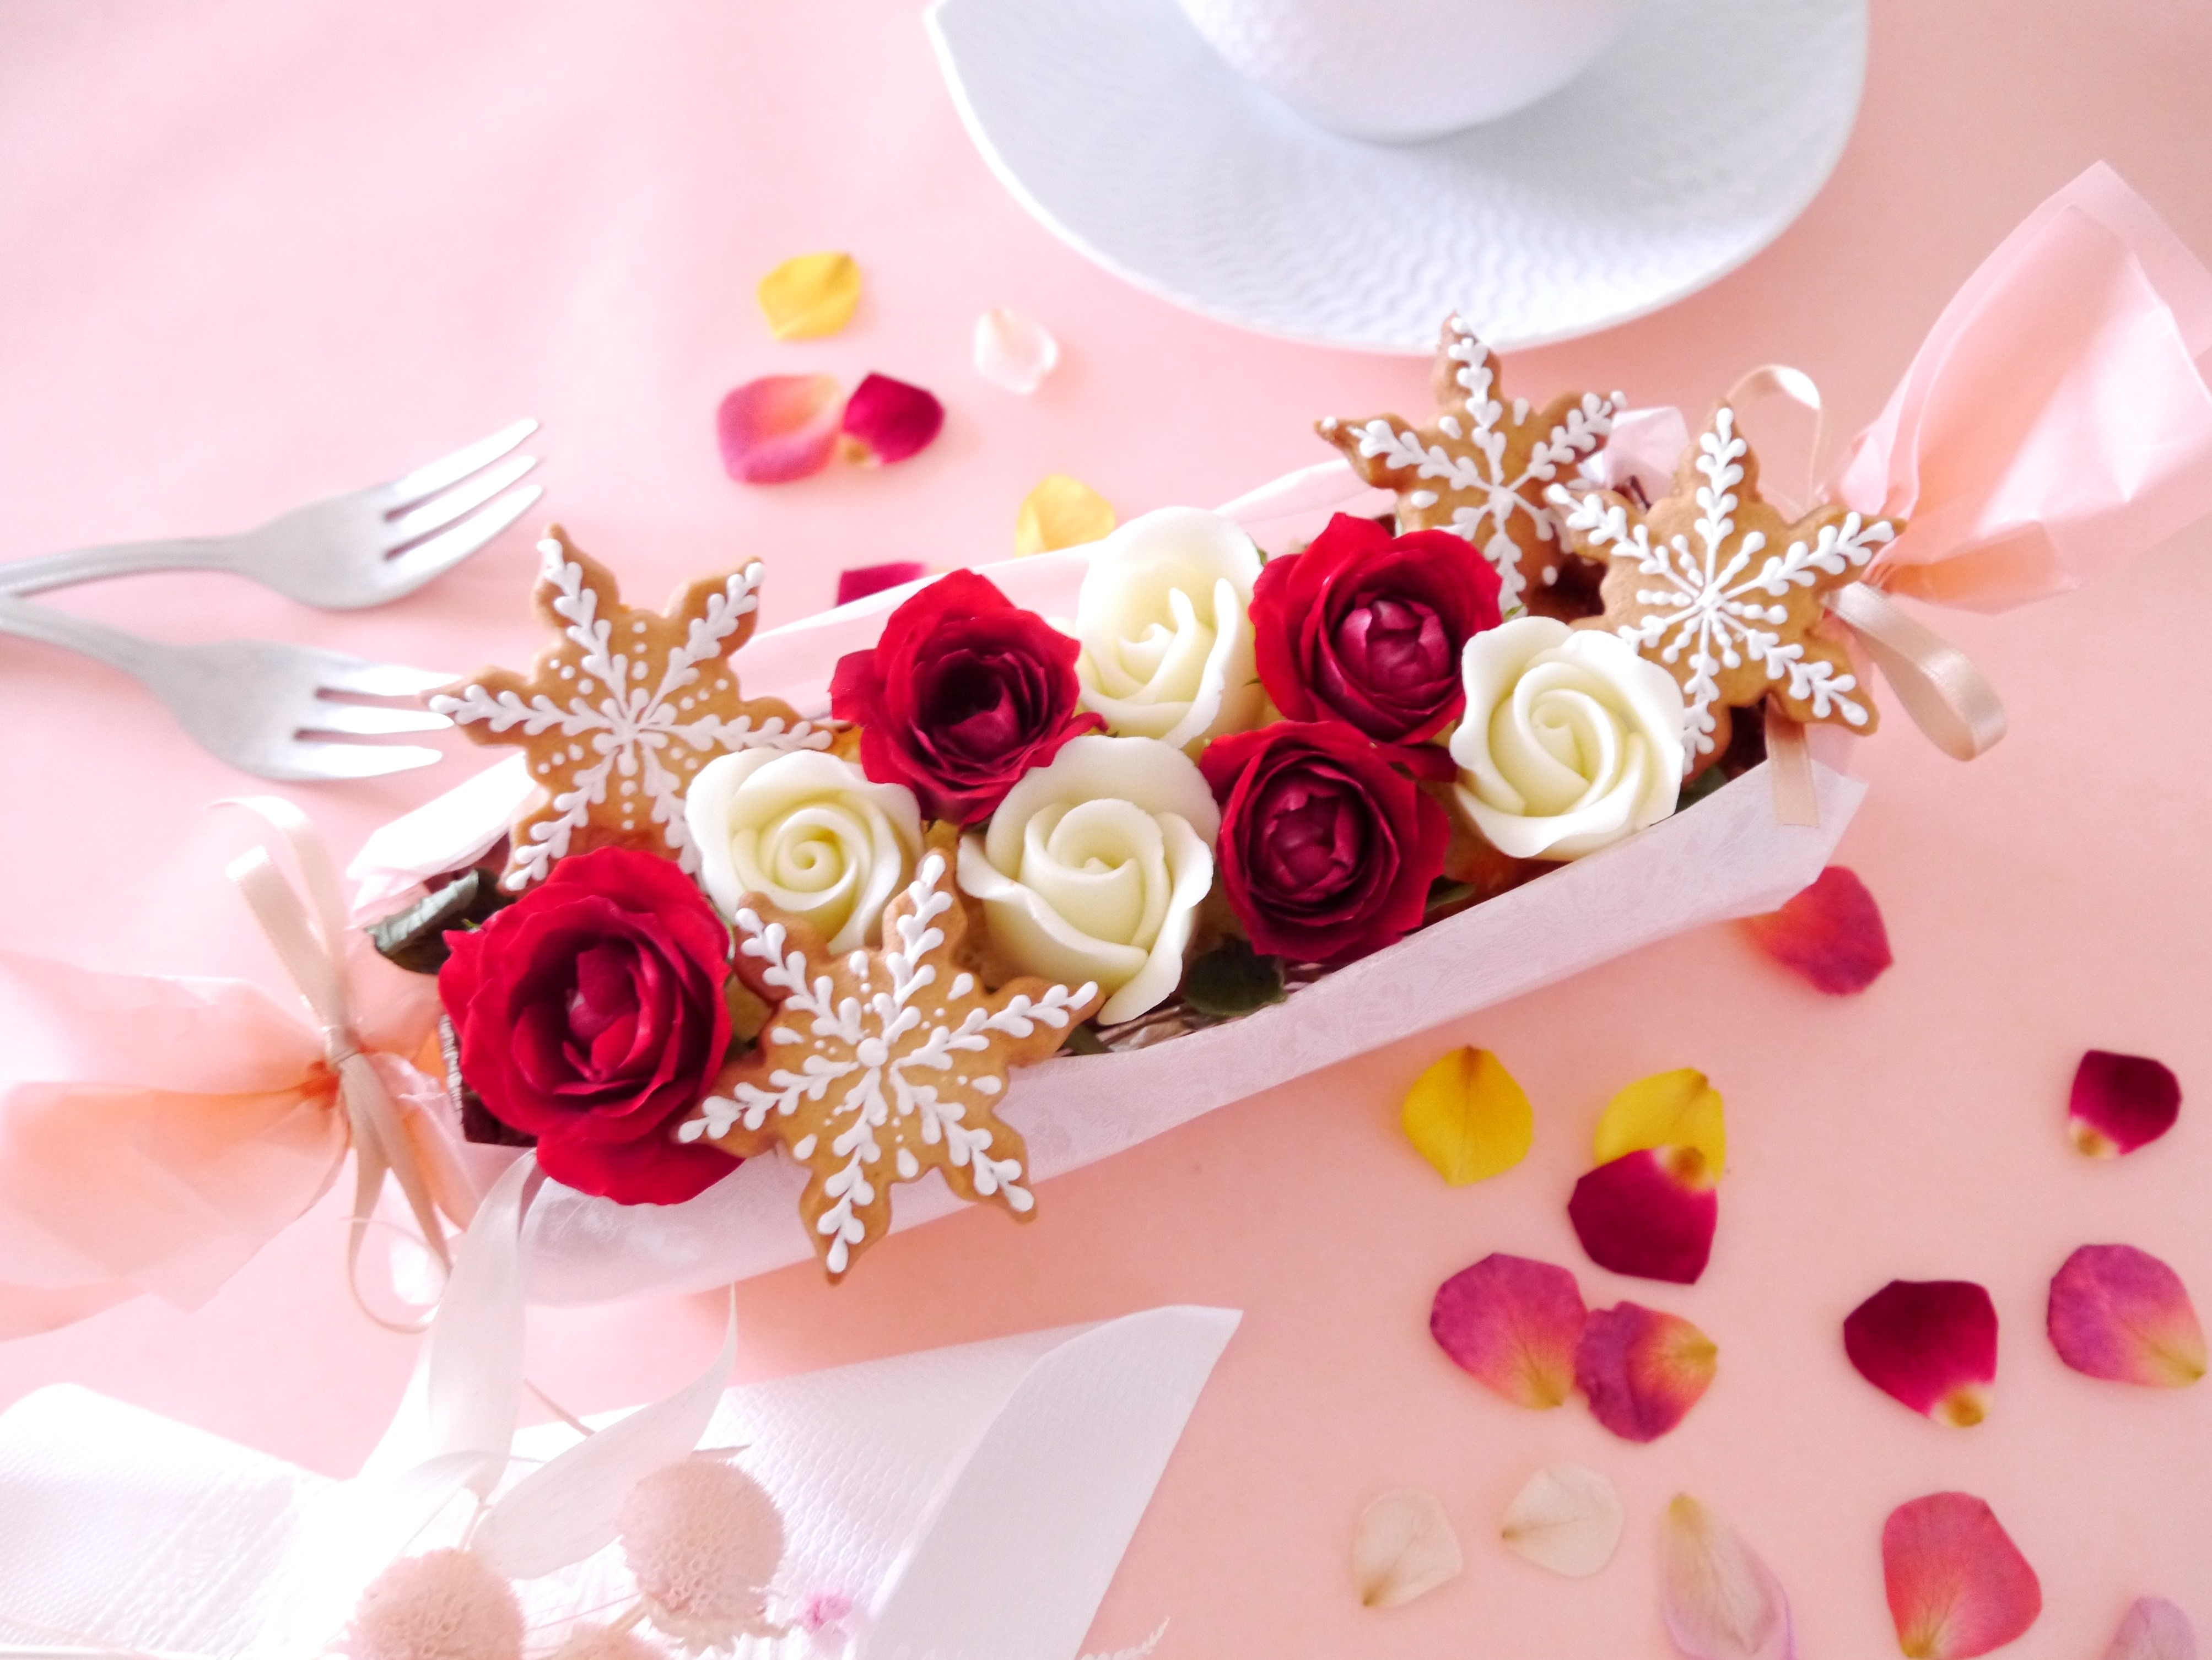 食べられるお花・エディブルフラワーに飾られた、3つのサプライズが詰まった贅沢なケーキです。